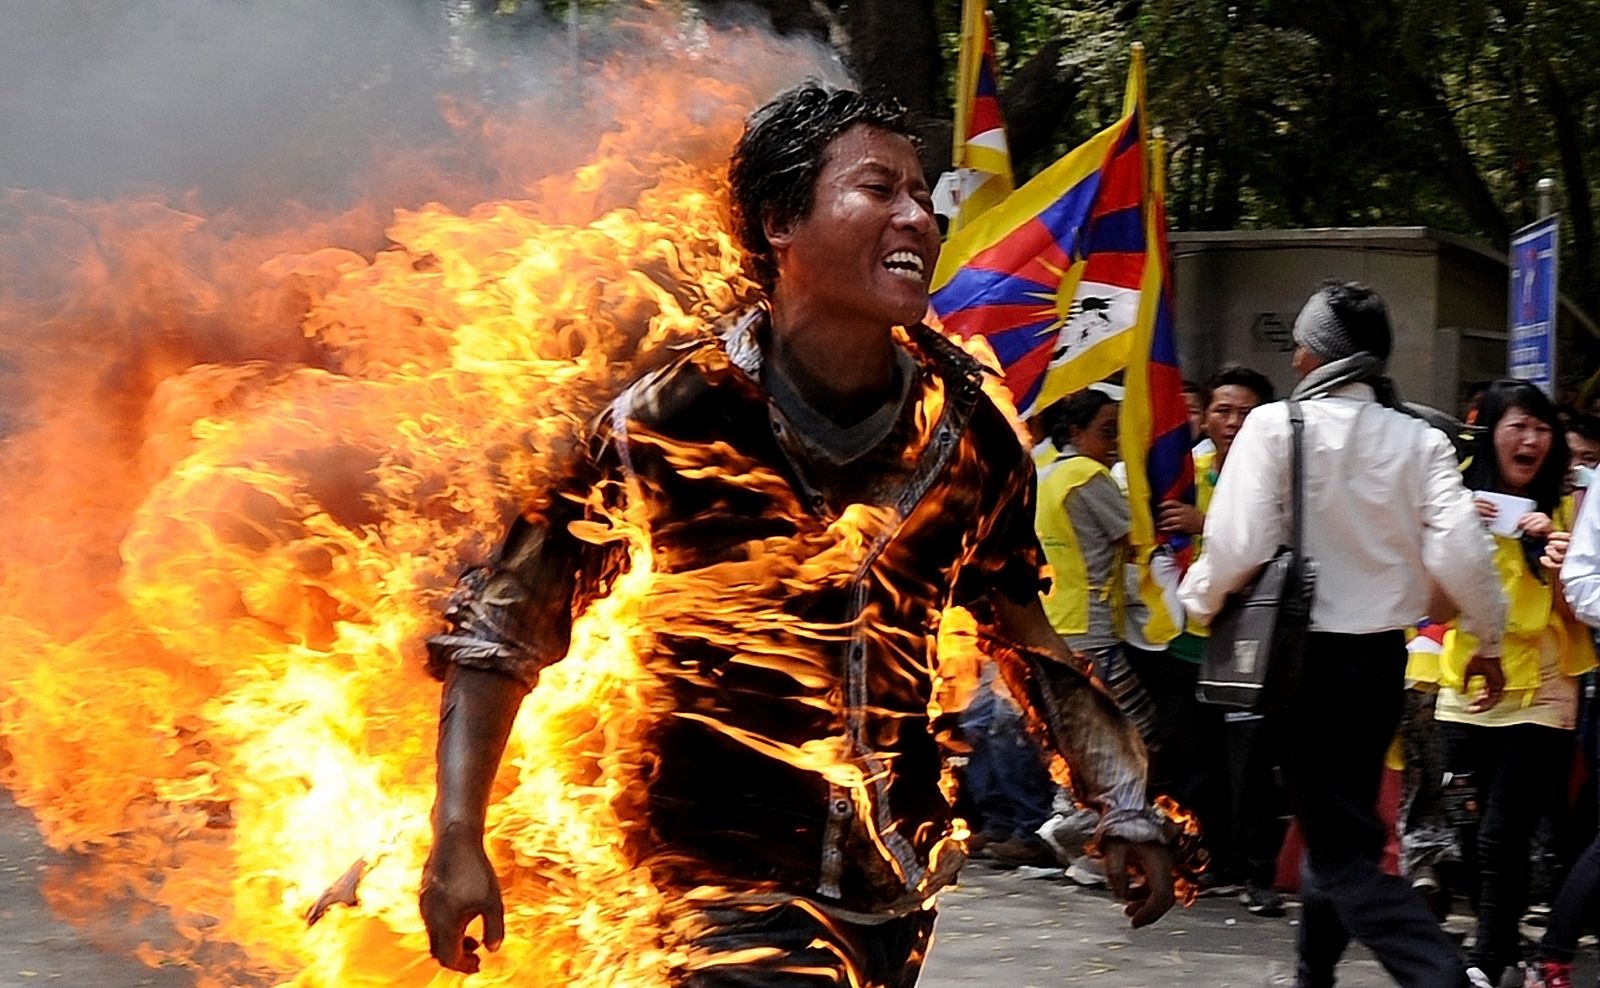 El exiliado tibetano Janphel Yeshi, de 27 años, envuelto en llamas tras prenderse fuego en Nueva Delhi